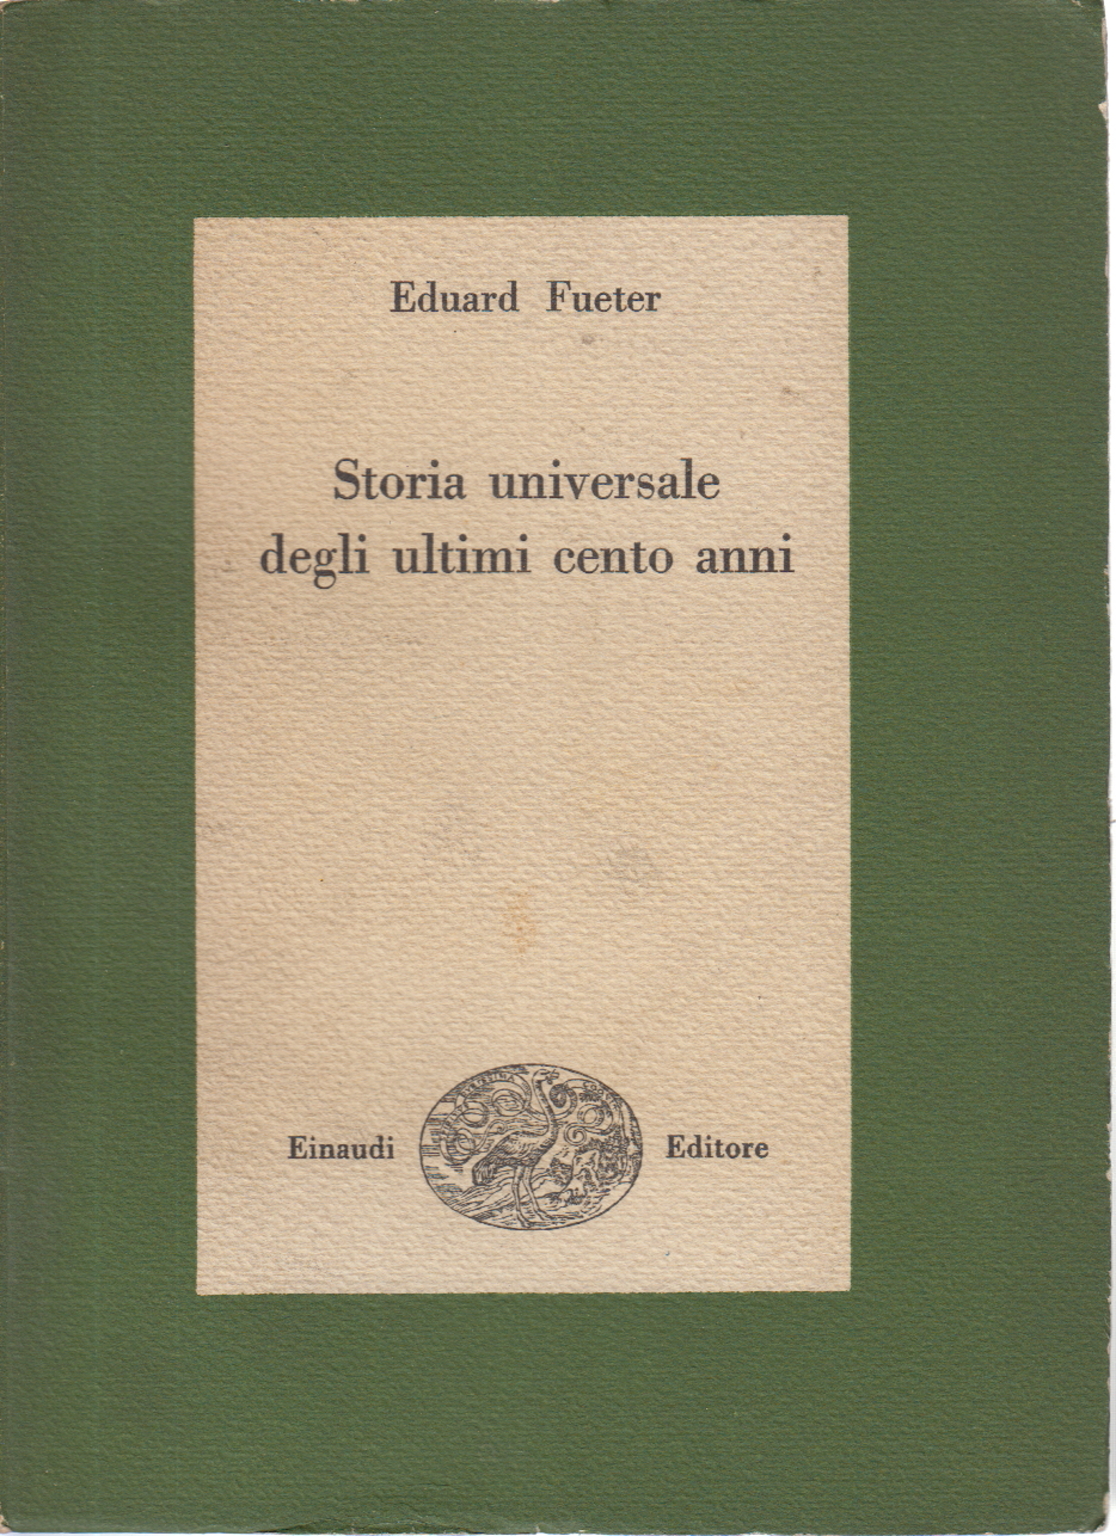 L'histoire universelle de la dernière centaine d'années 1815-192, Eduard Fueter